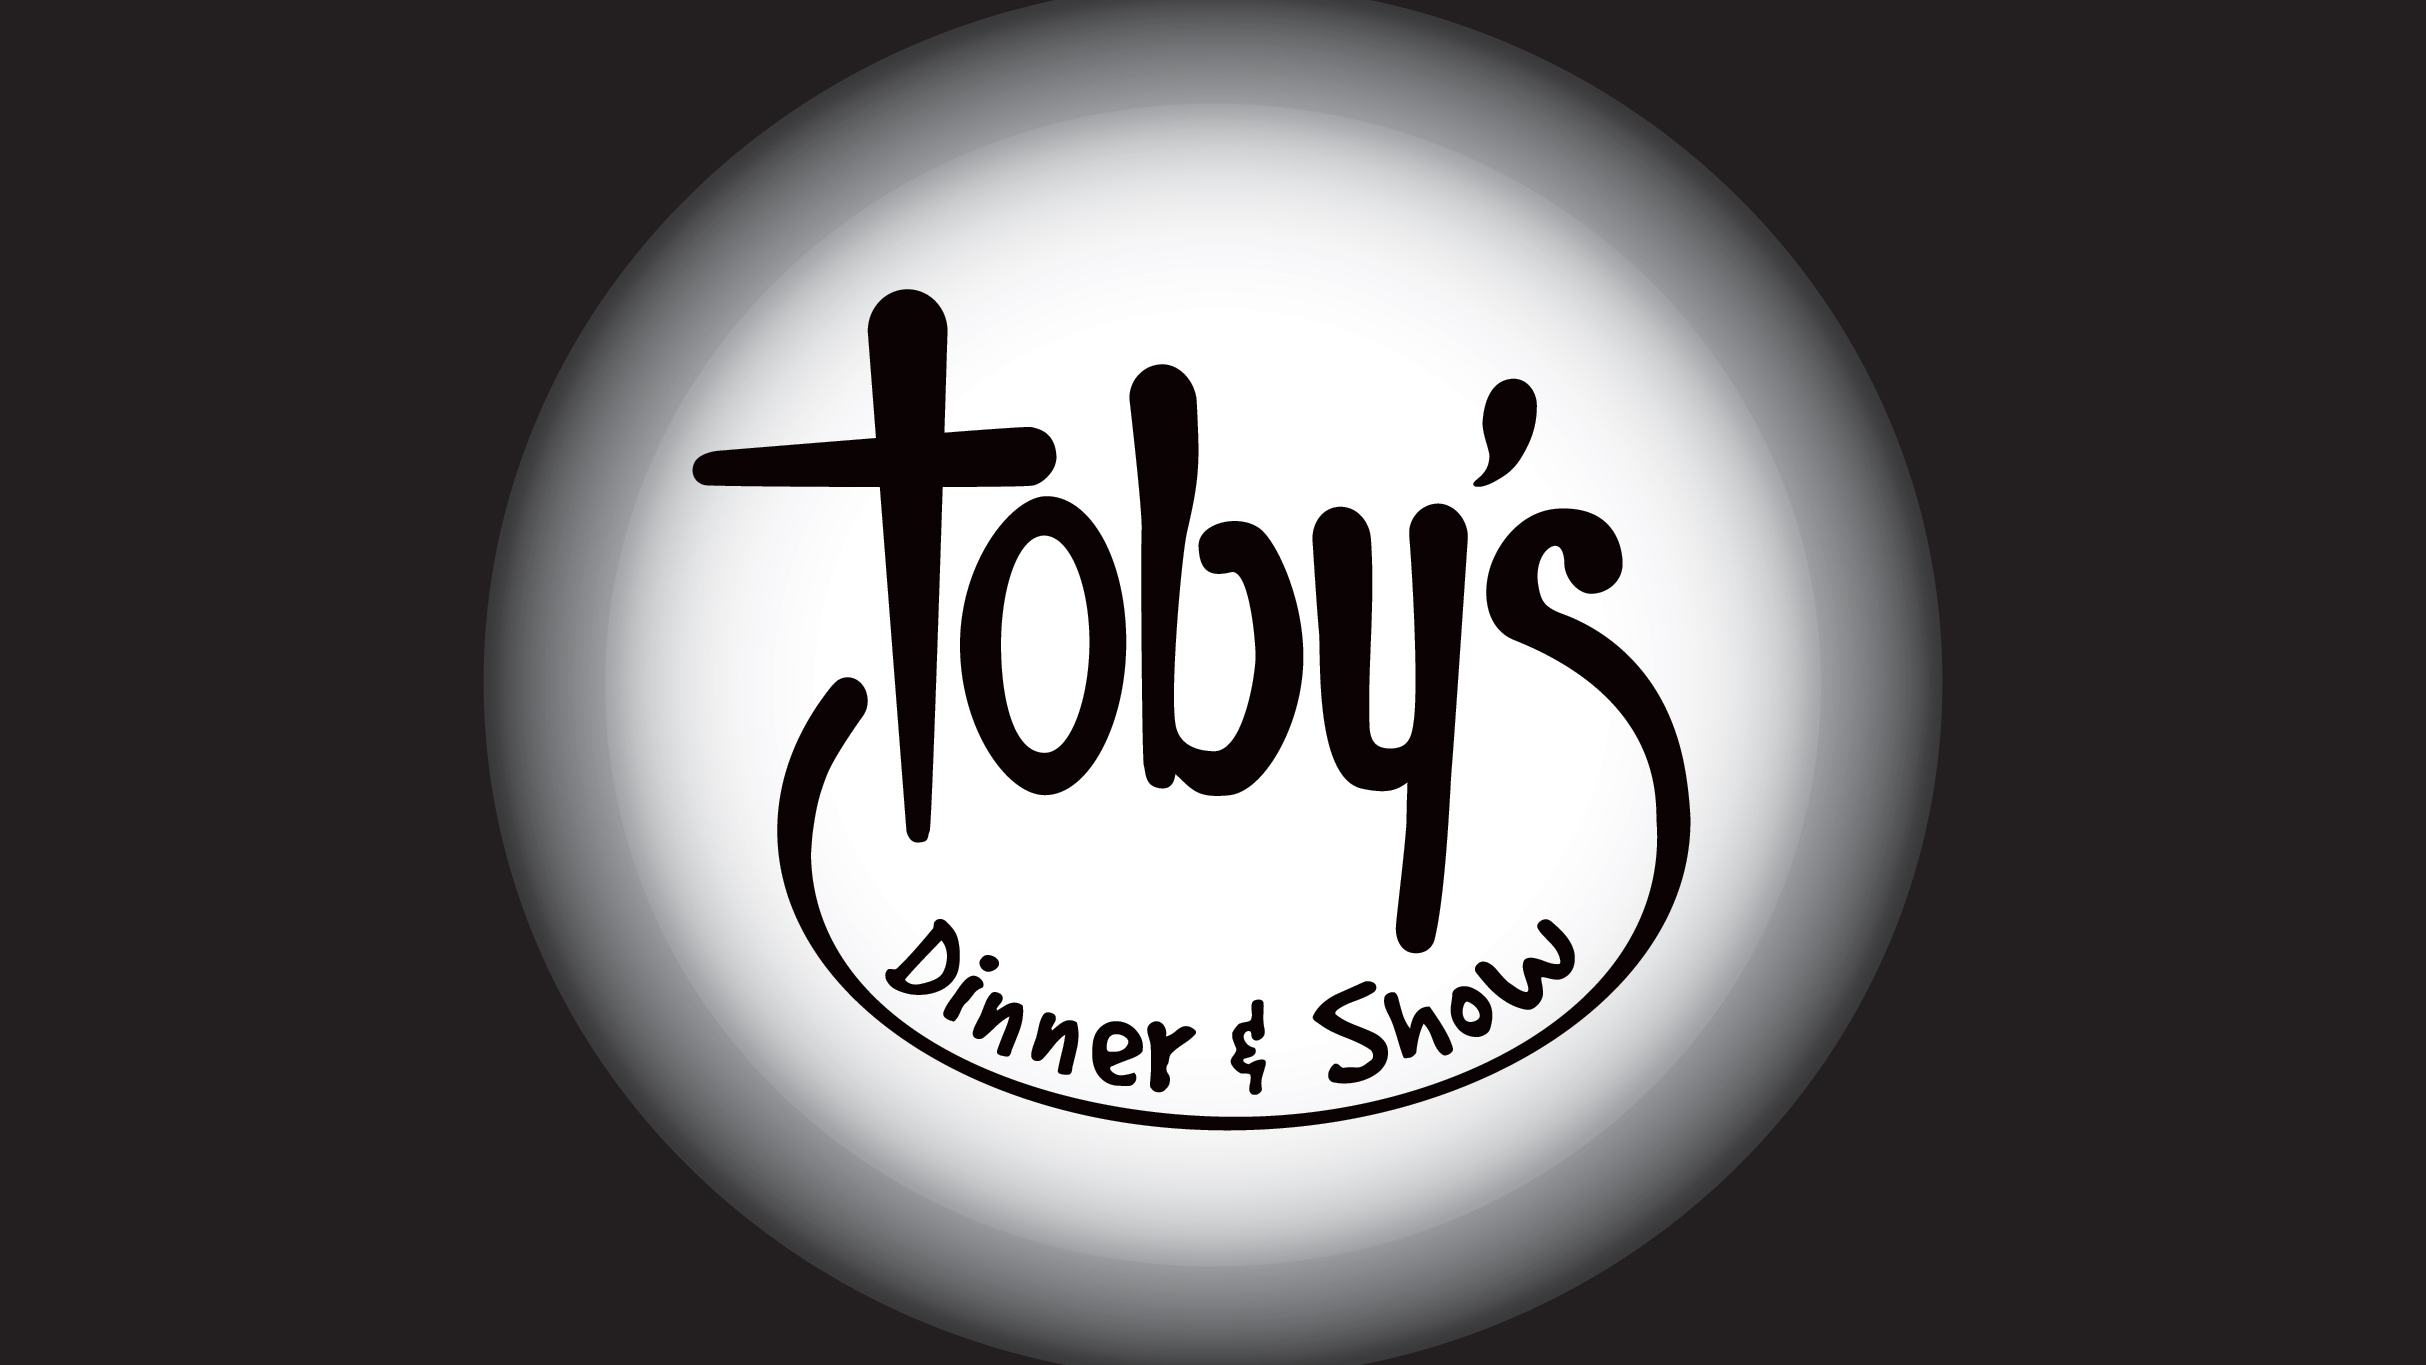 Toby's 